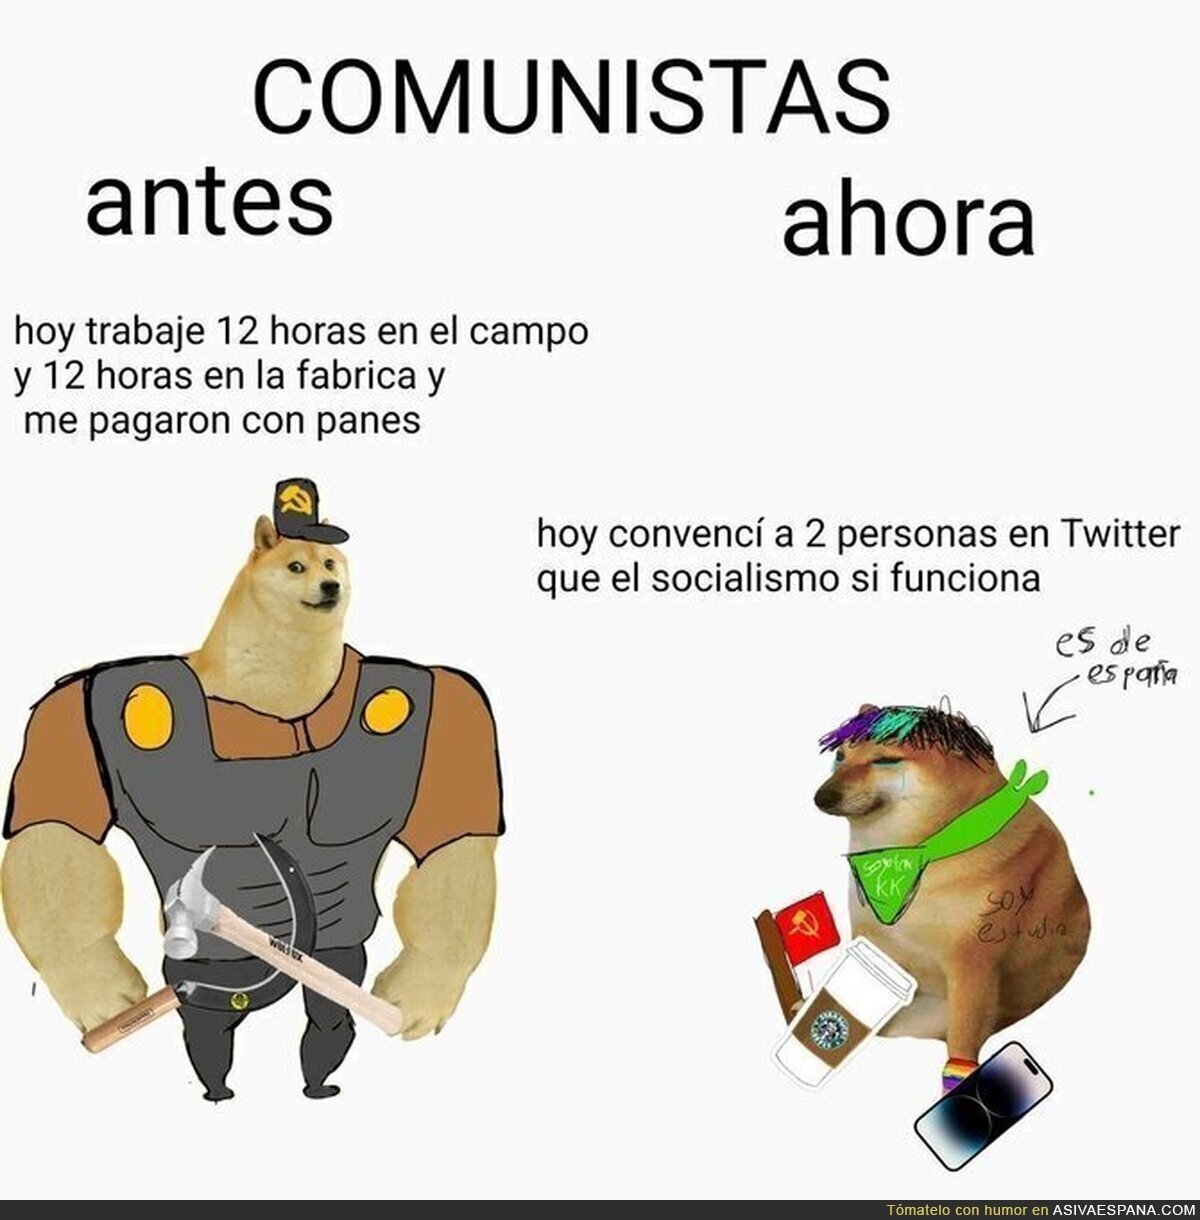 COMUNISTAS ANTES VS AHORA